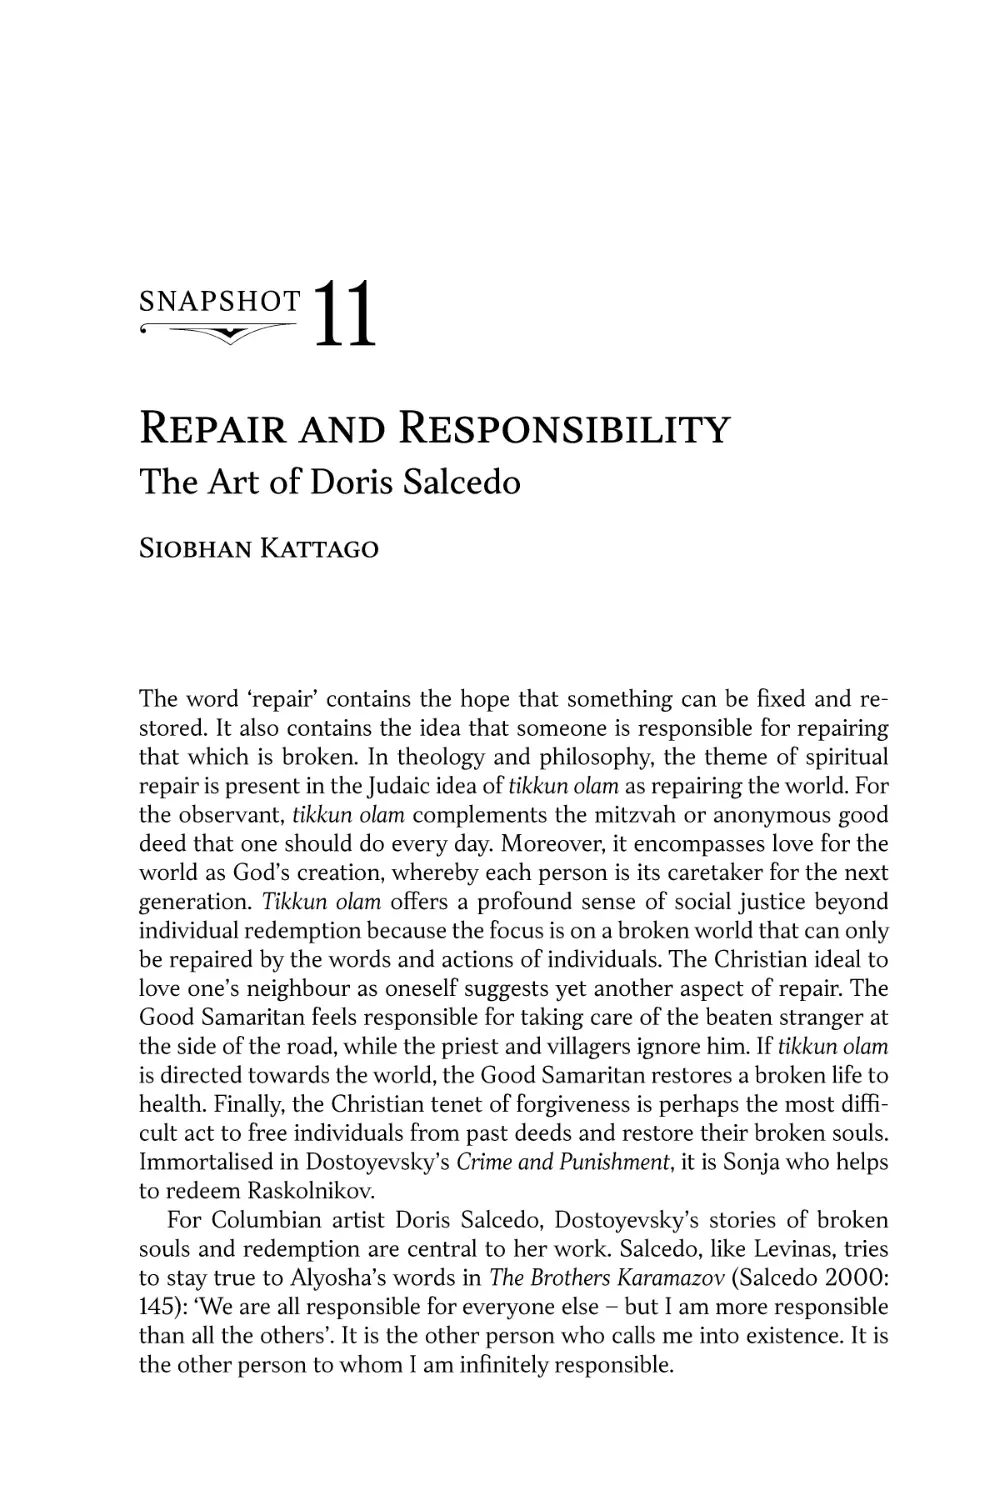 Snapshot 11. Repair and Responsibility